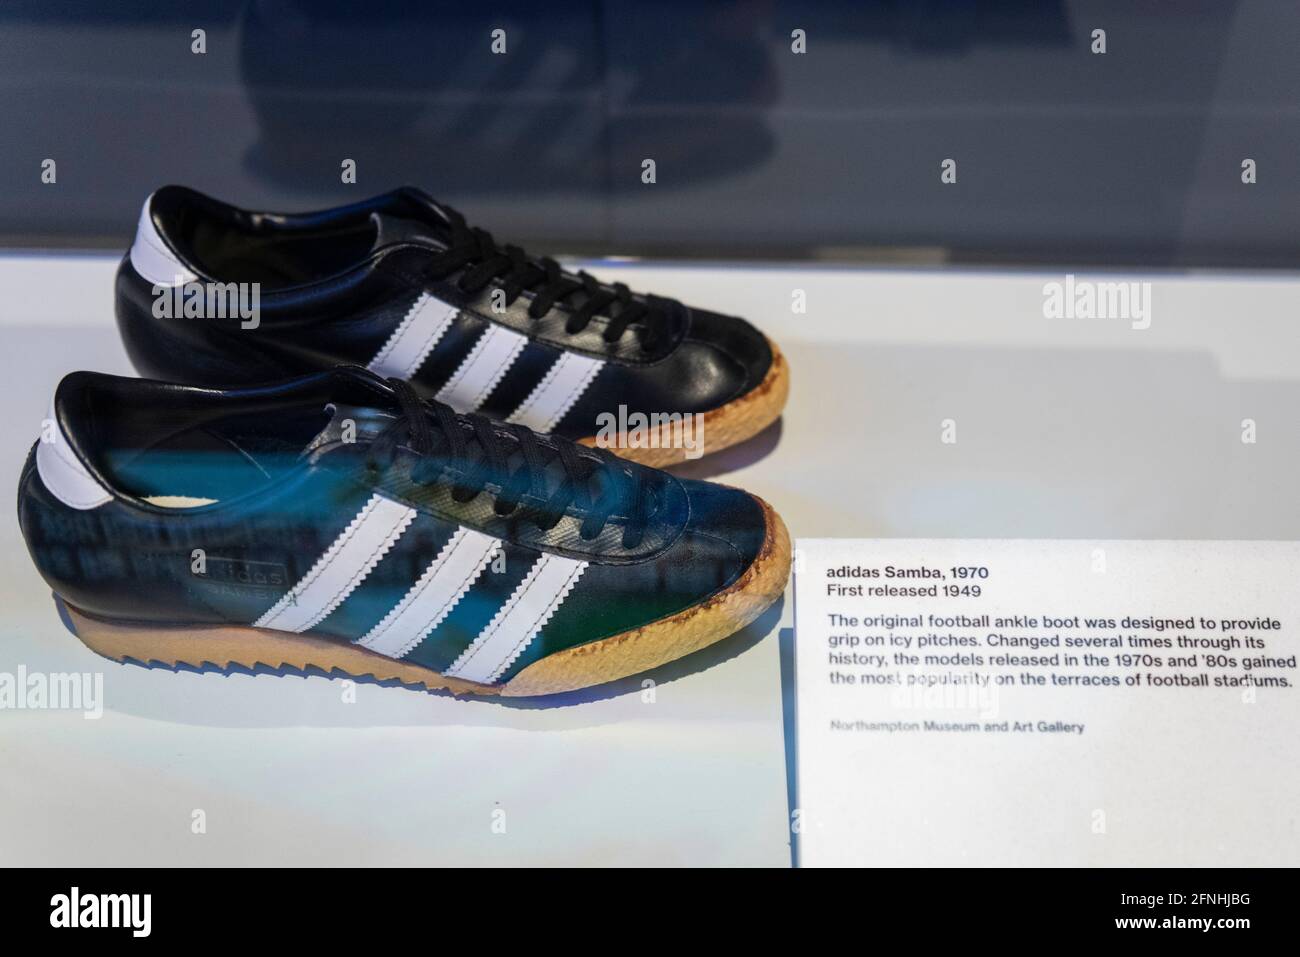 Londres, Reino Unido. 17 de mayo de 2021. 'Adidas Samba', 1970, publicado por primera vez en 1940. botas de fútbol originales para el tobillo se han para proporcionar agarre en